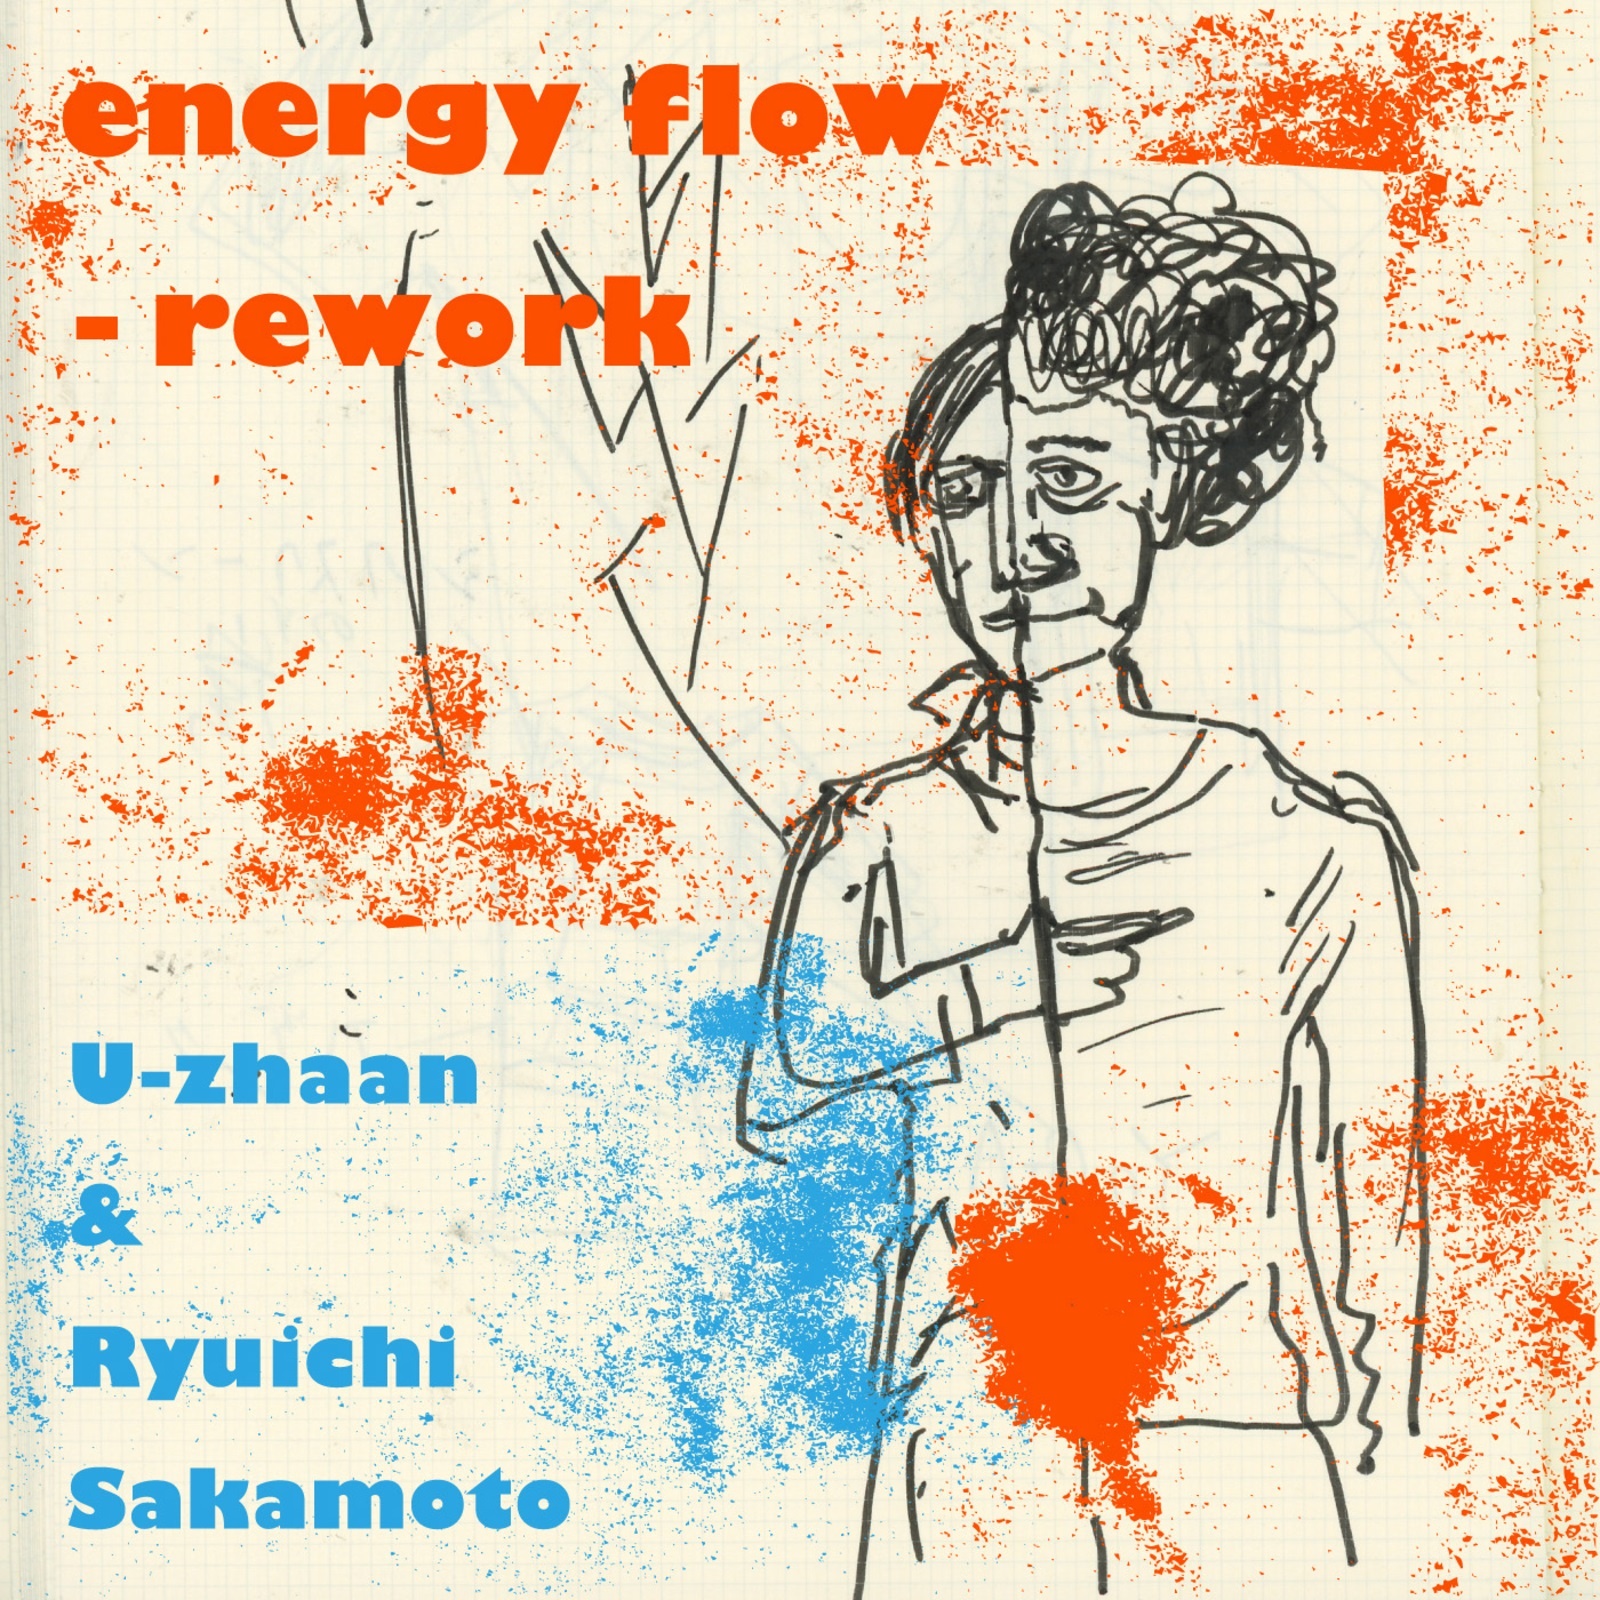 energy flow - rework